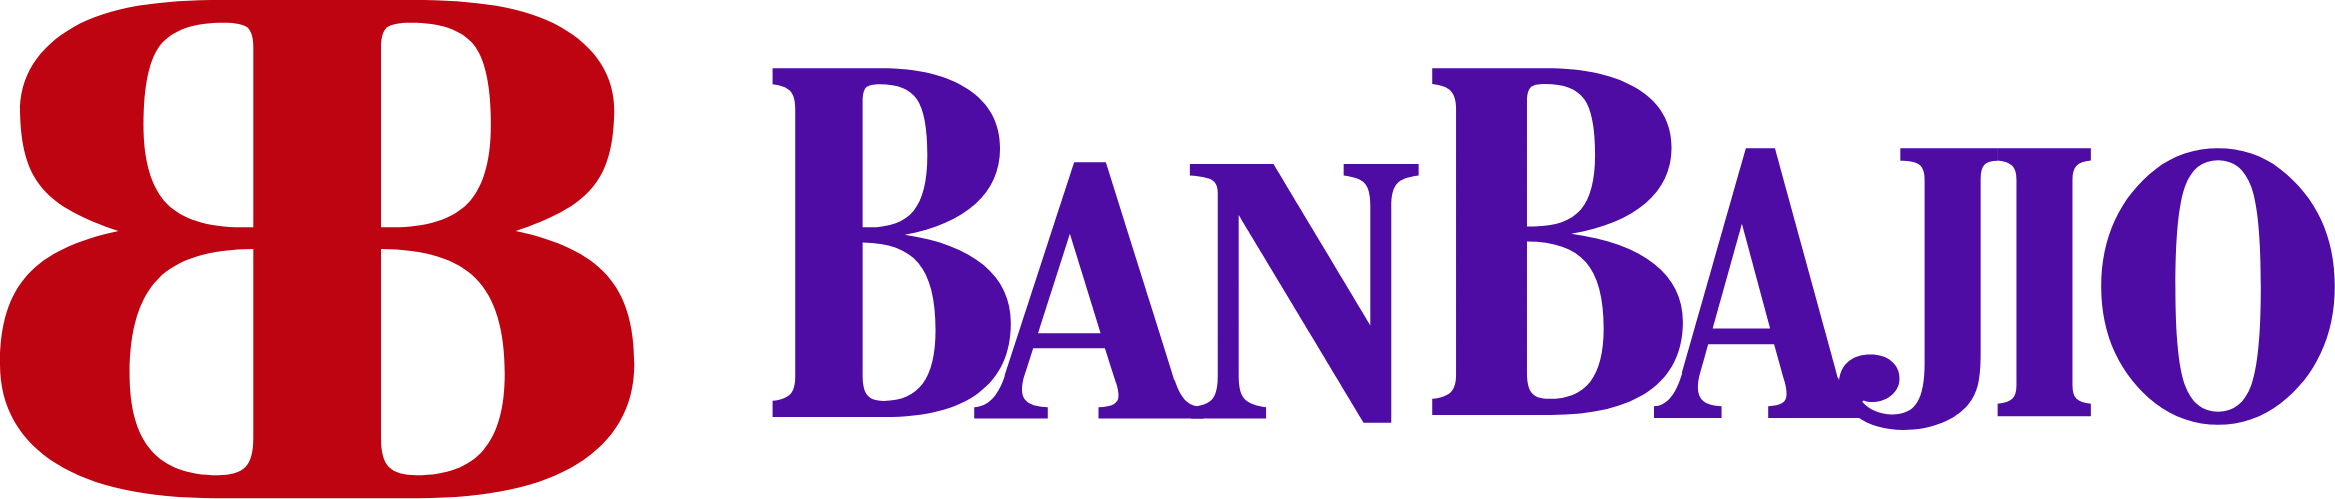 Banco del Bajío logo large (transparent PNG)